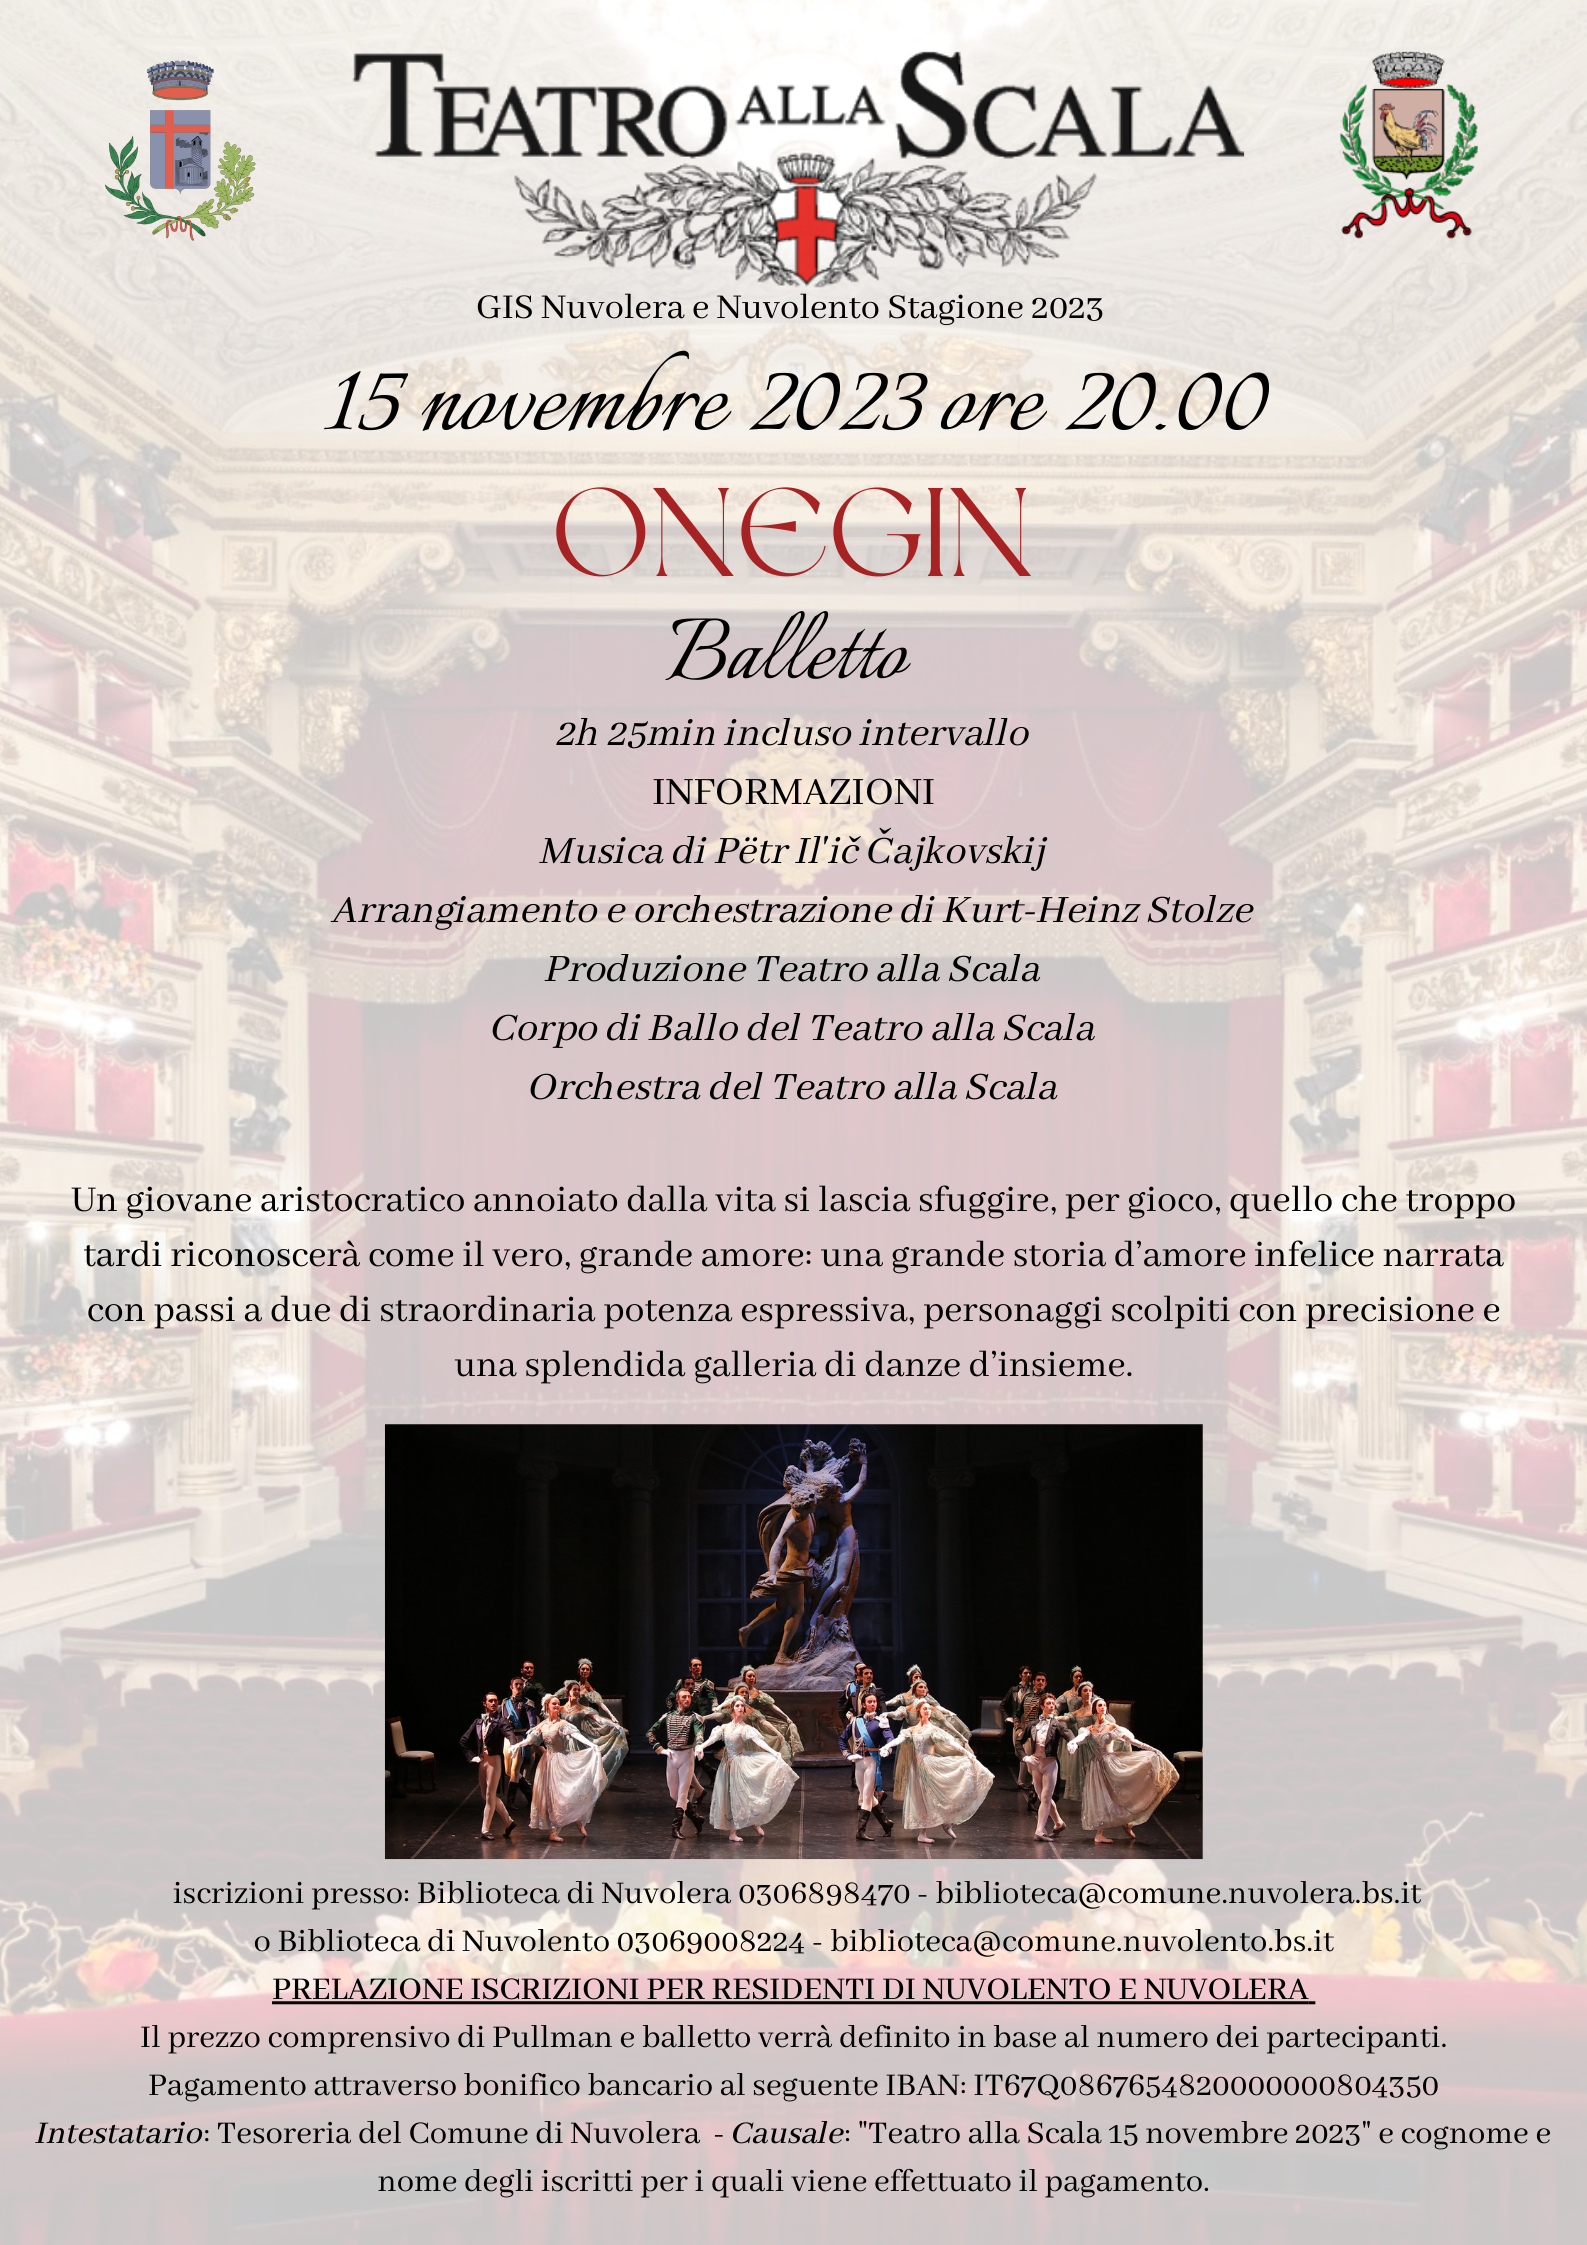 Immagine di copertina per ONEGIN Balletto 15 novembre Teatro Alla Scala